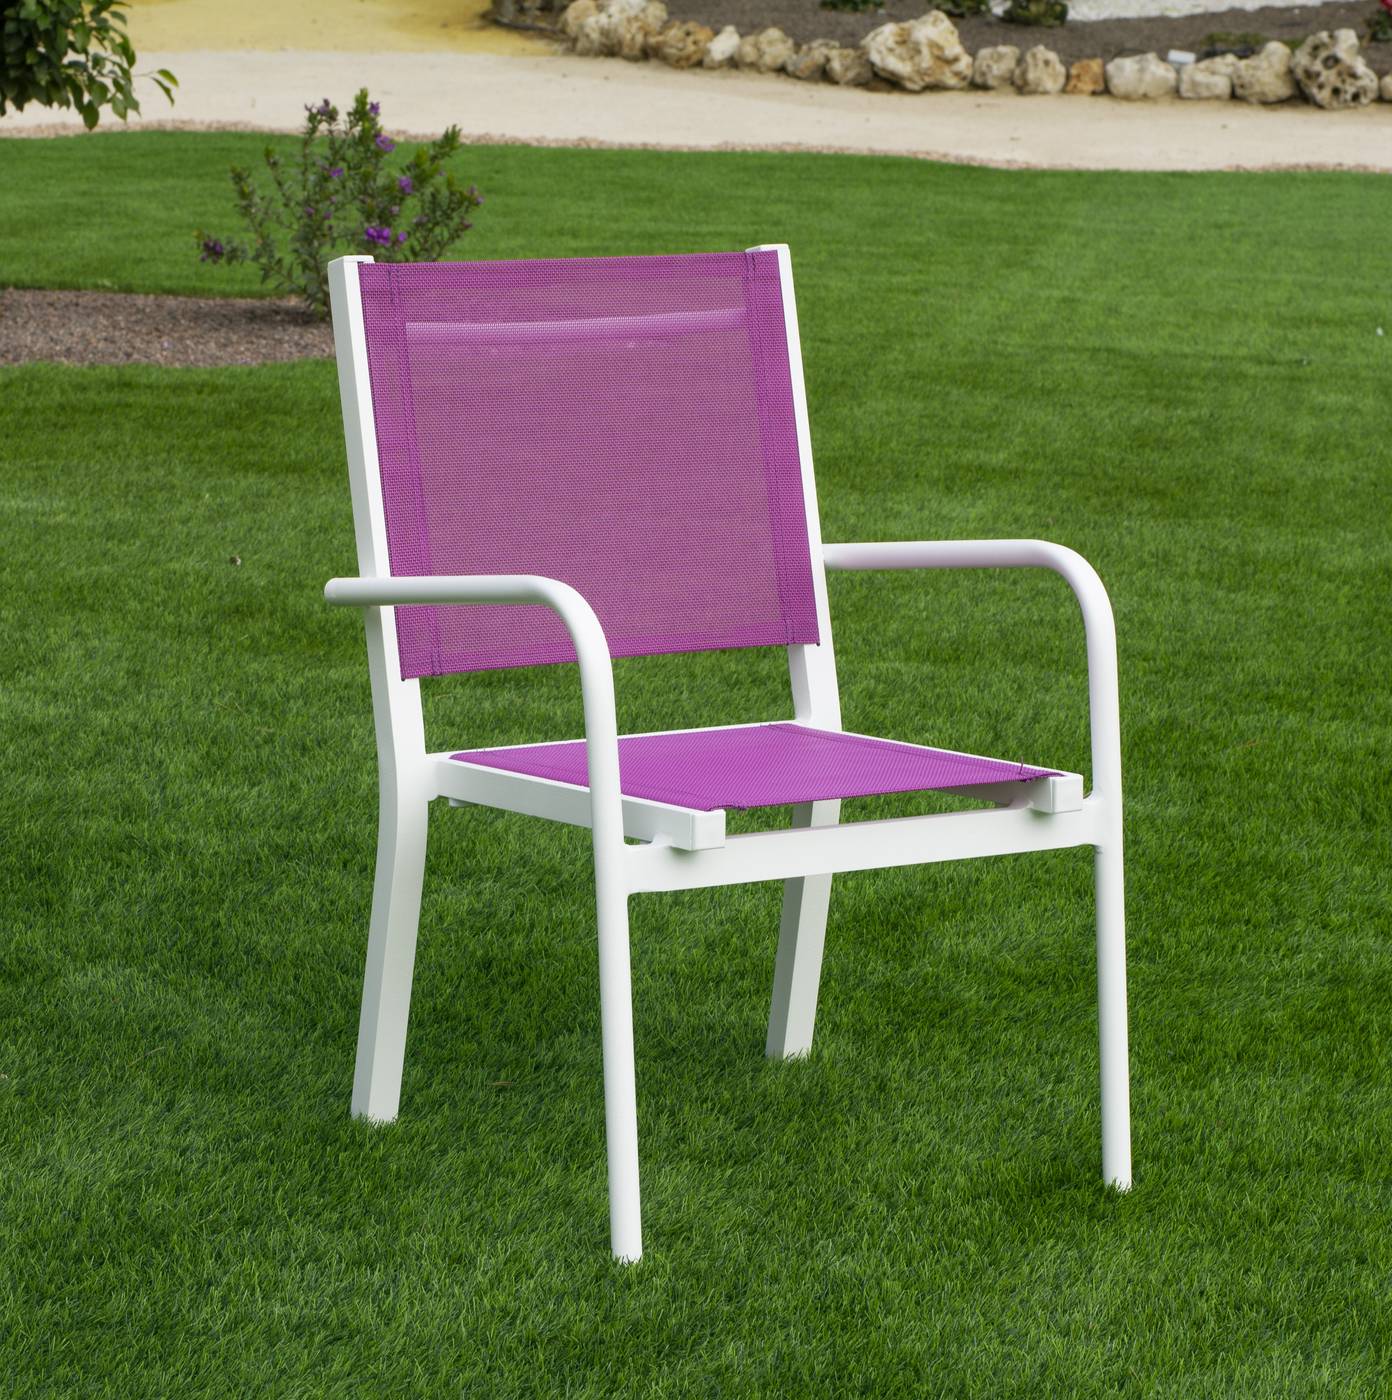 Sillón Aluminio Disni - Sillón infantil de aluminio color blanco, con asiento y respaldo de textilen color azul o rosa.